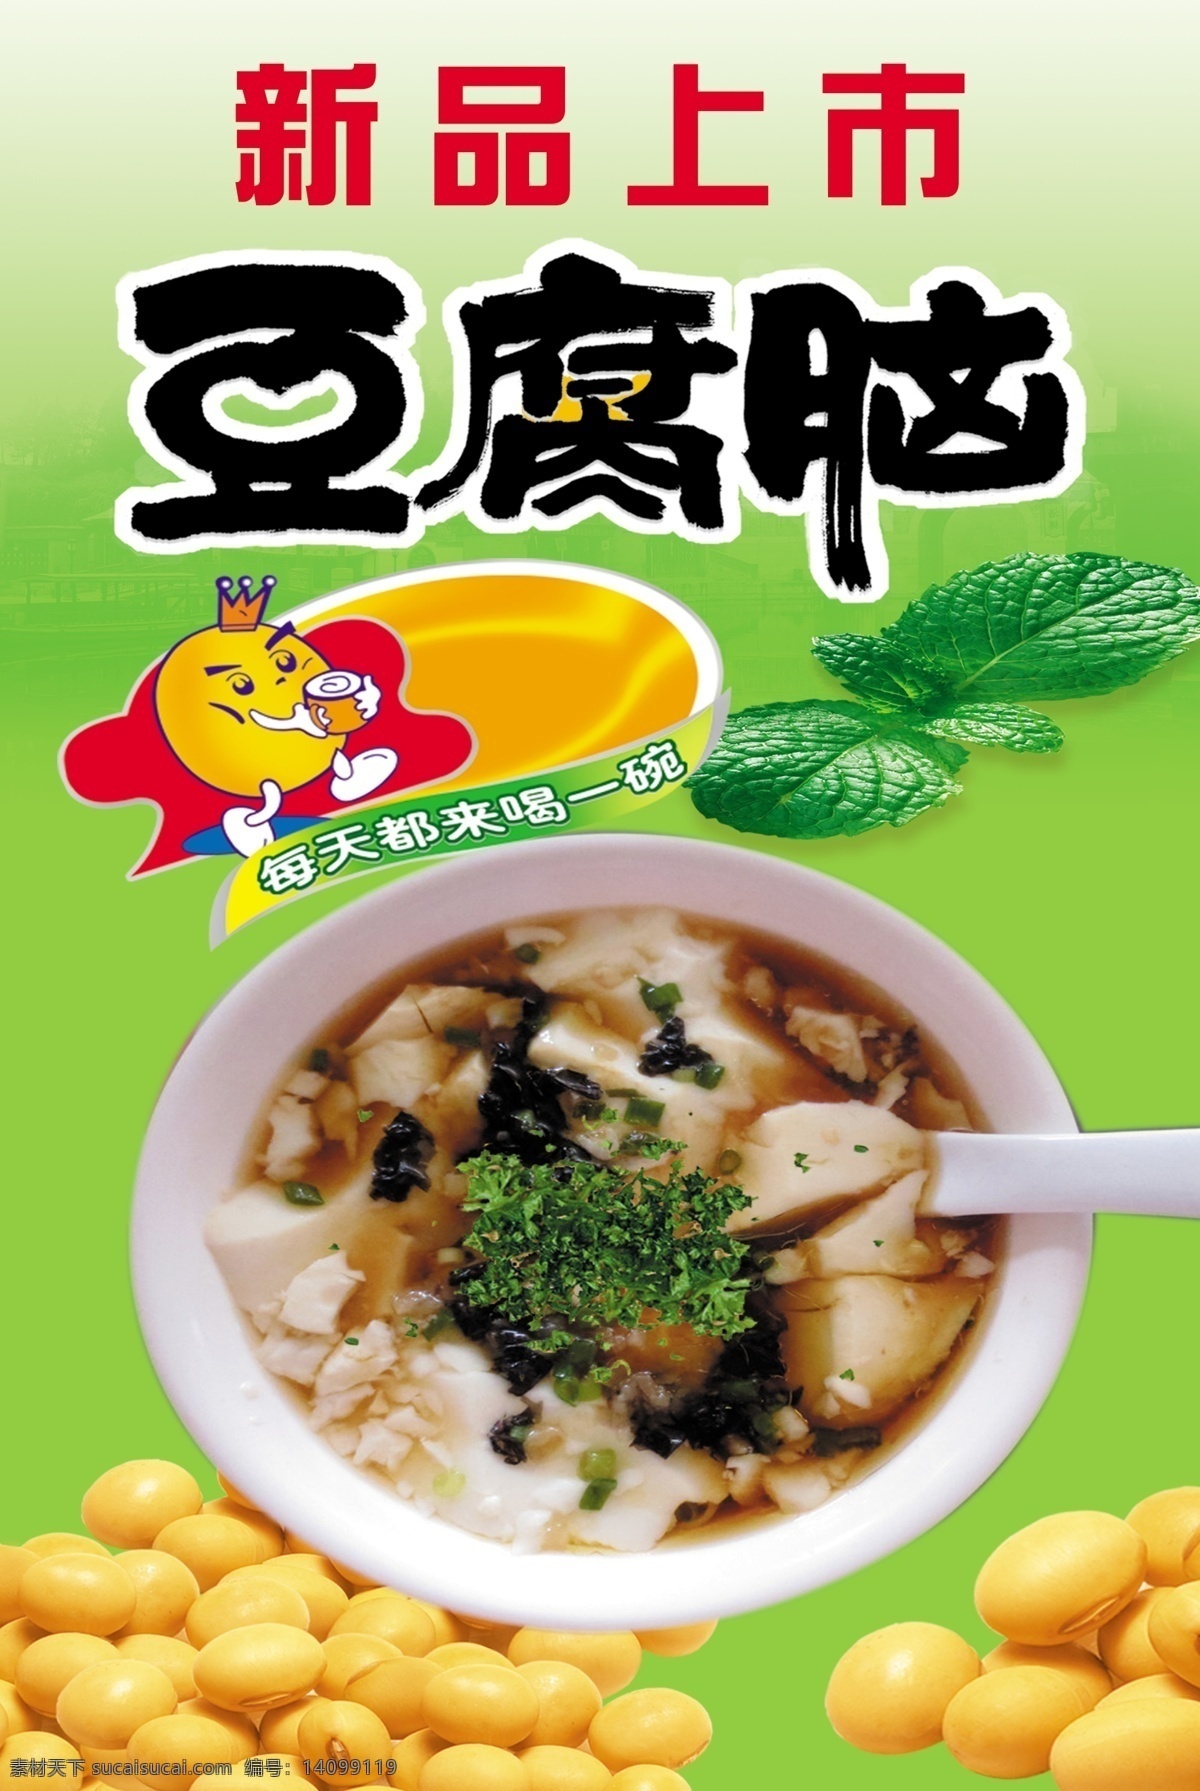 豆腐 豆浆 豆花 豆腐脑广告 海报展板